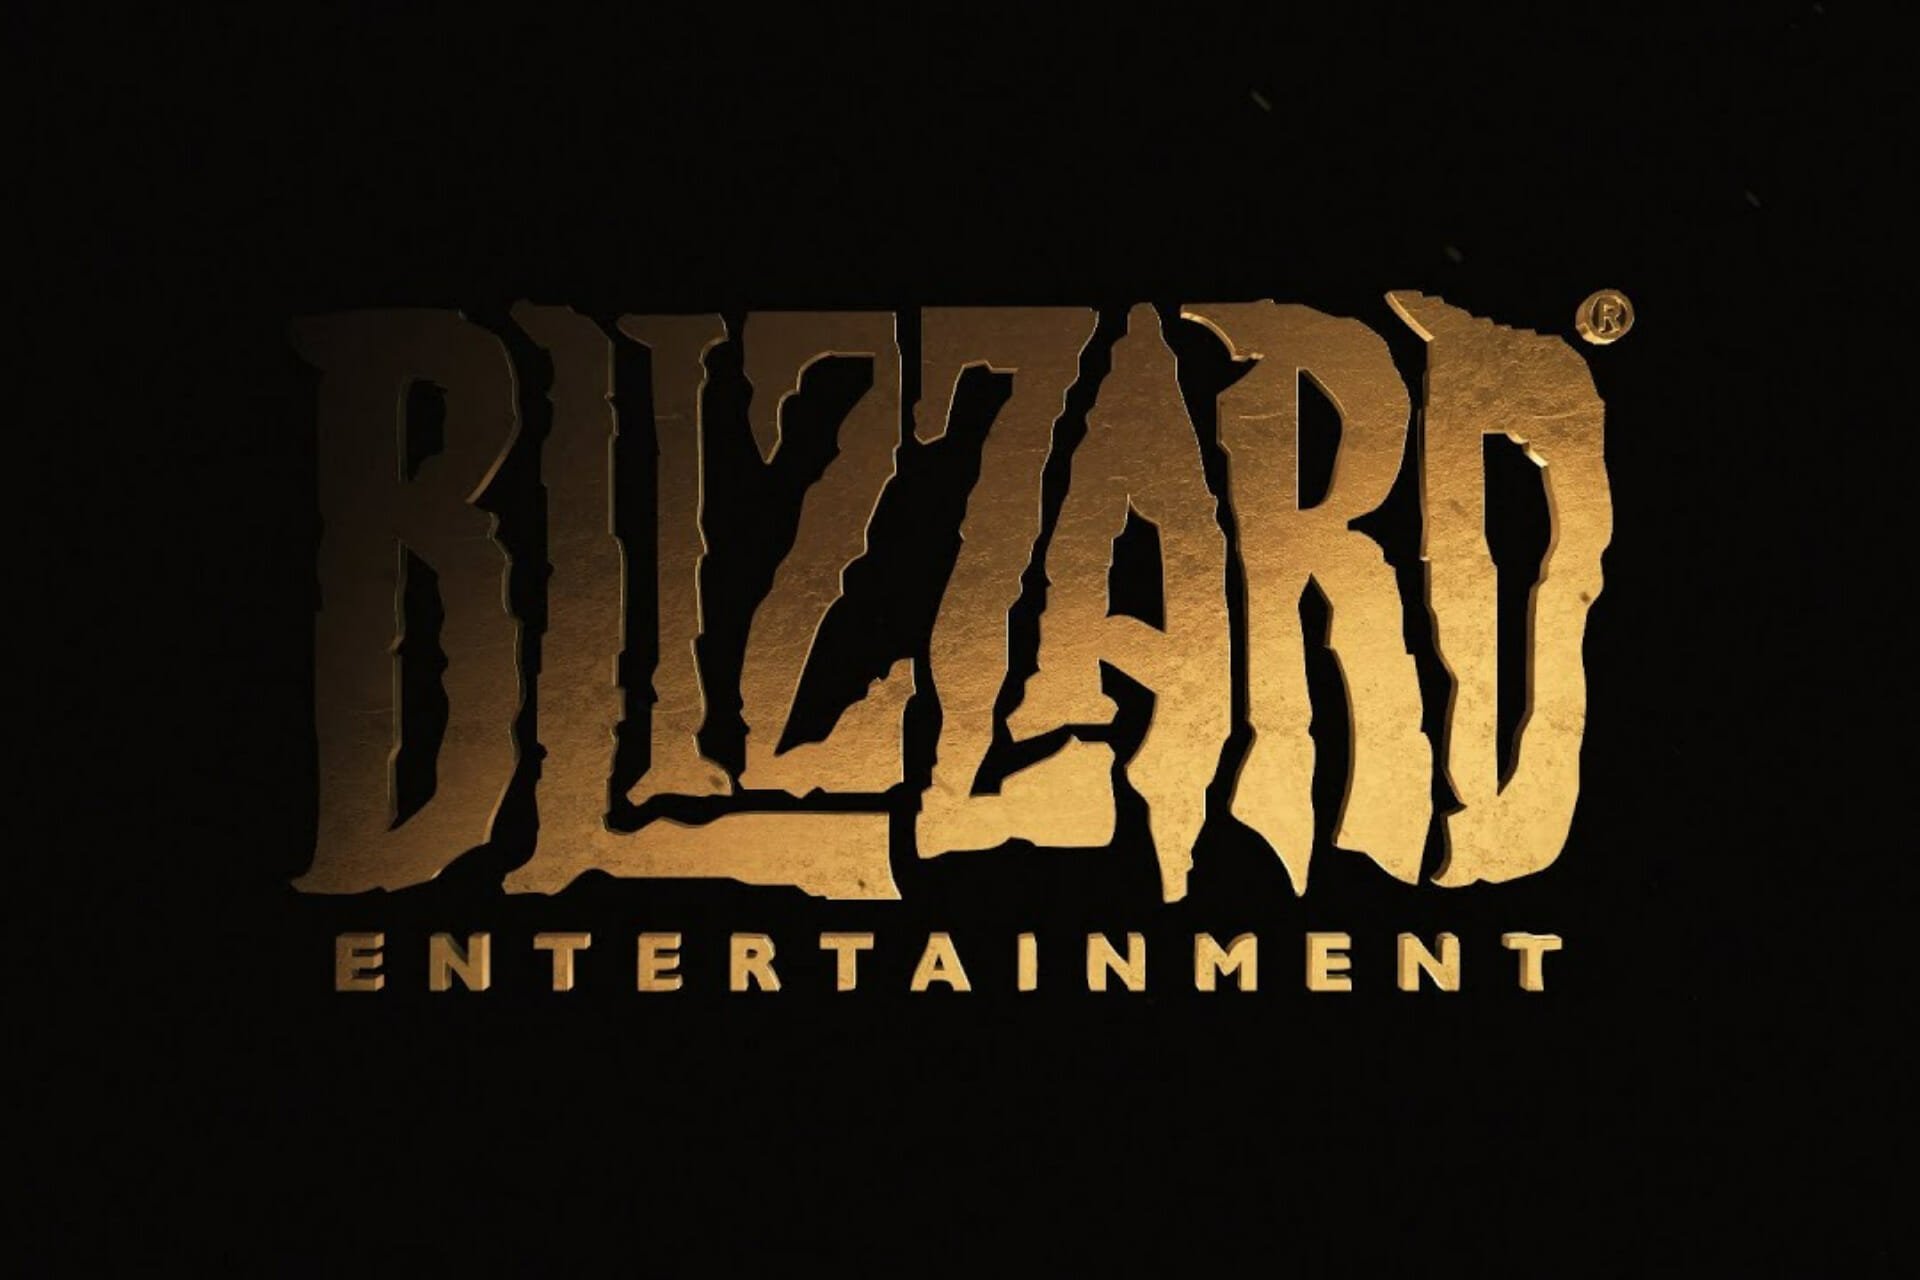 Blizzard unnanounced game